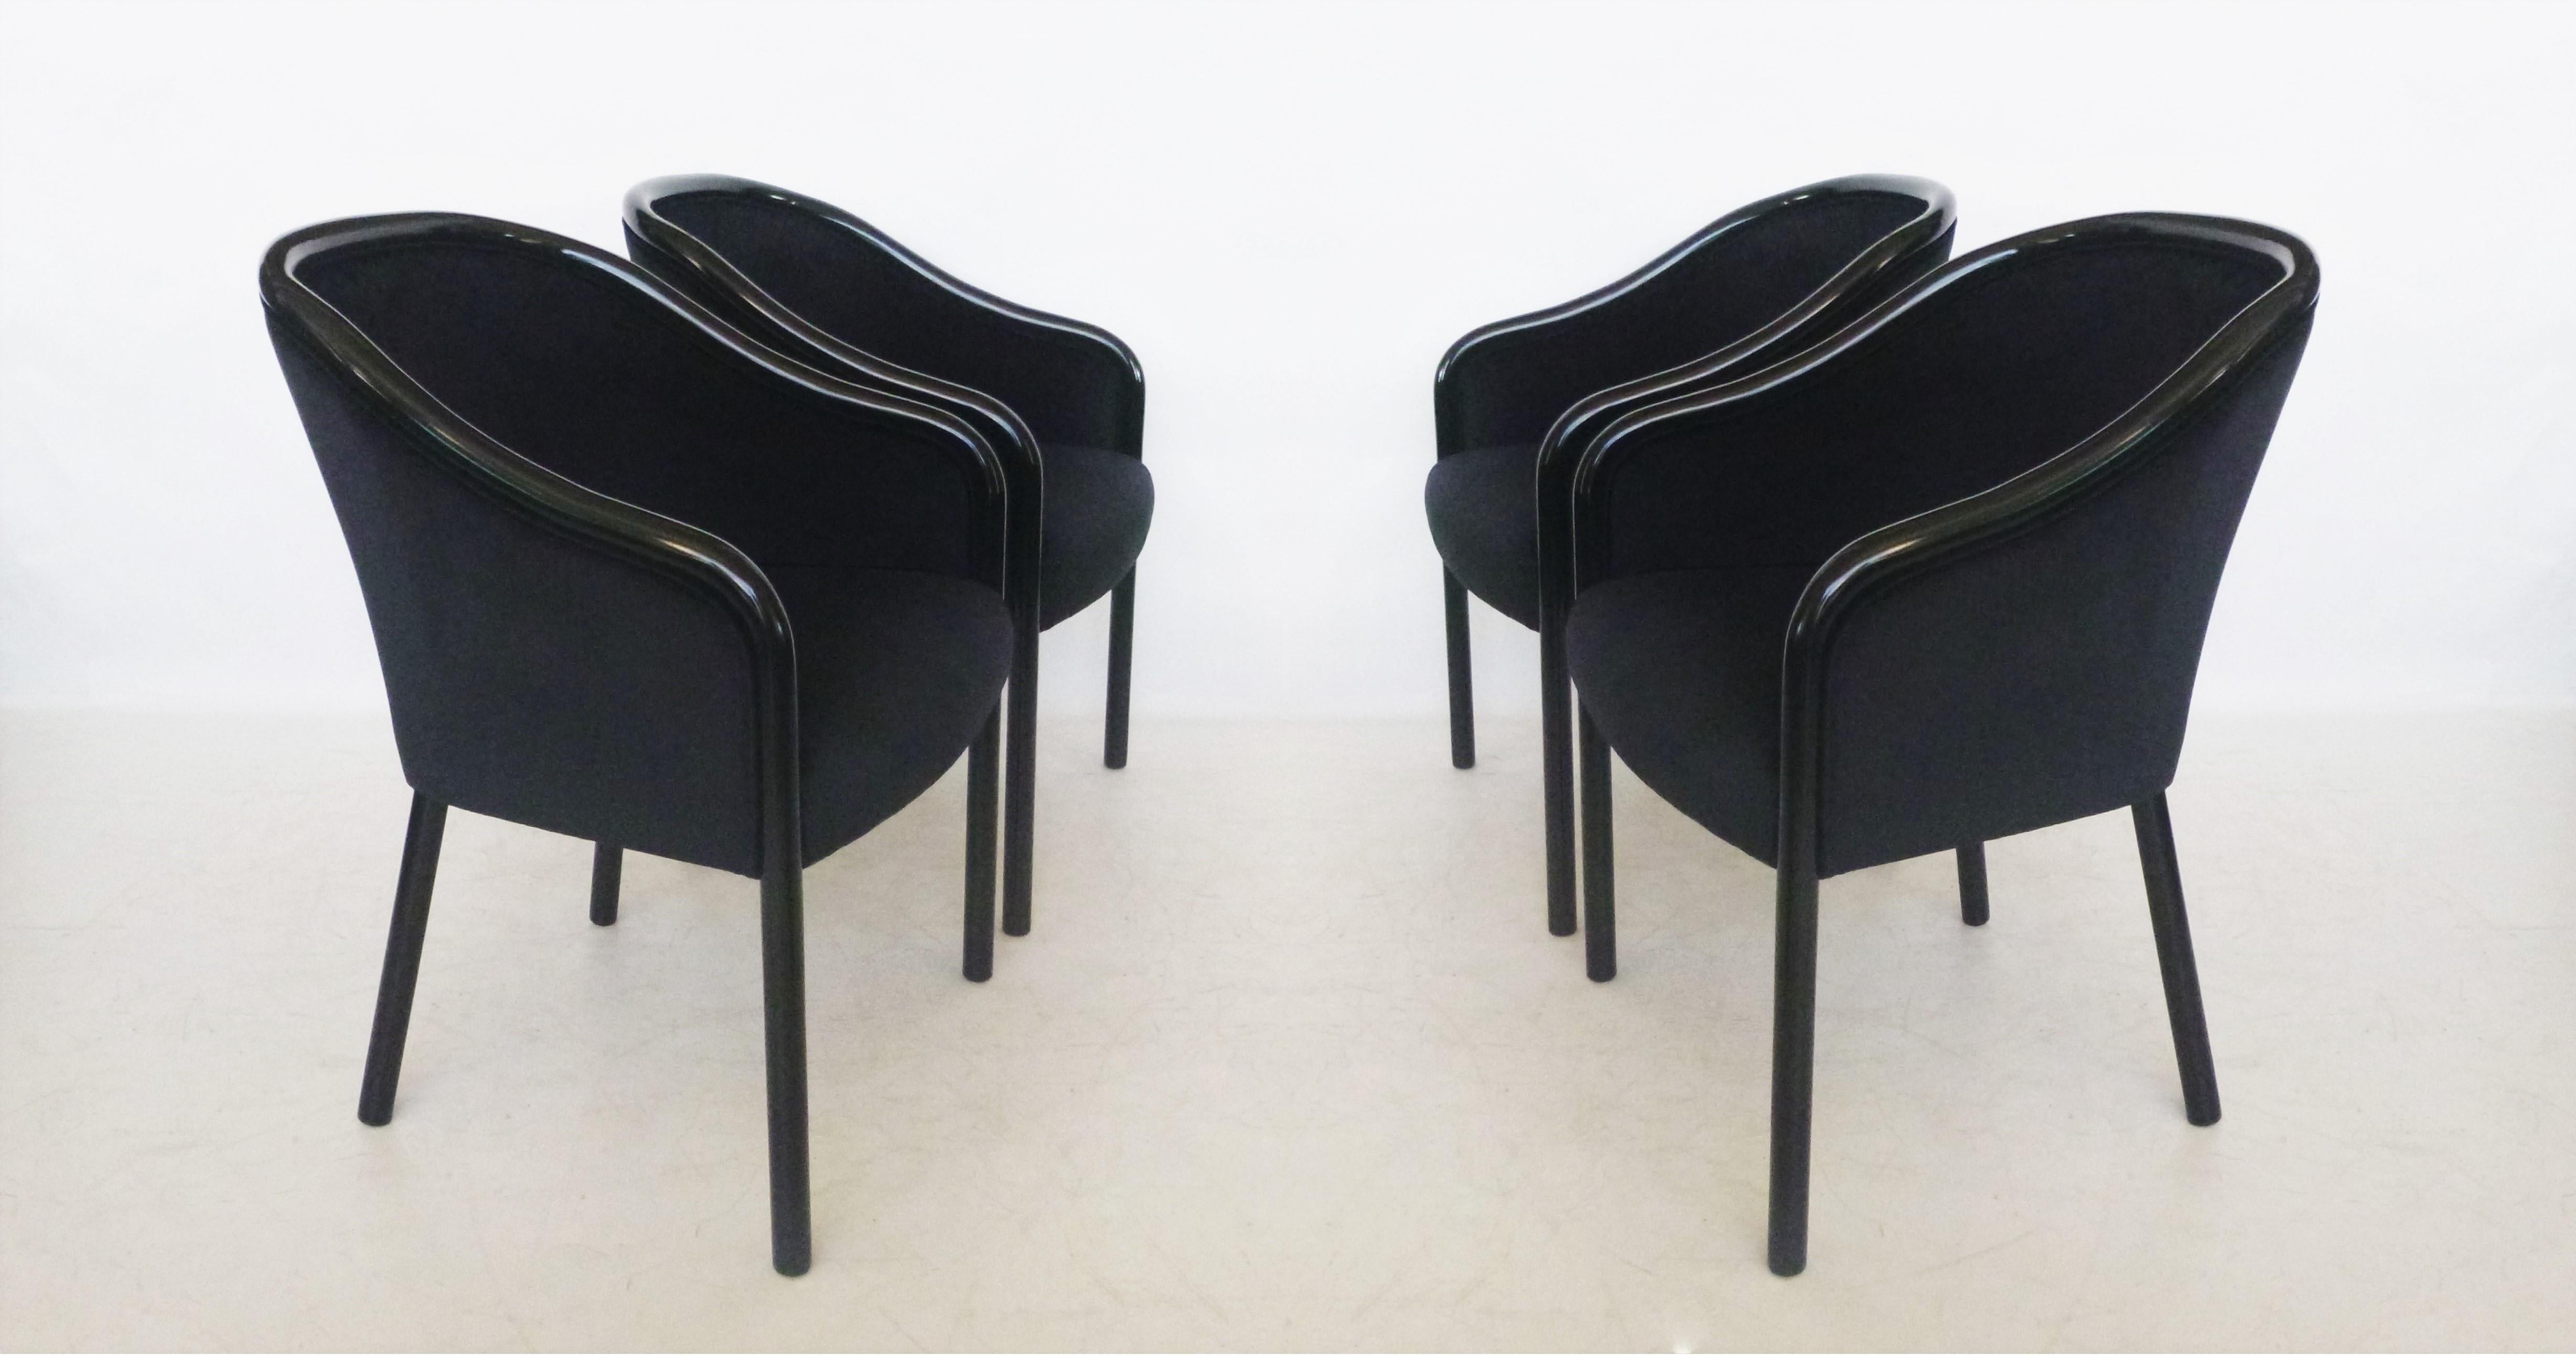 Ensemble de huit fauteuils noirs Ward Bennett pour Brickell Associates. La construction simple est entièrement en bois massif. Piétements nouvellement laqués, dossier en tonneau impeccablement assemblé et accoudoirs inclinés qui se prolongent dans